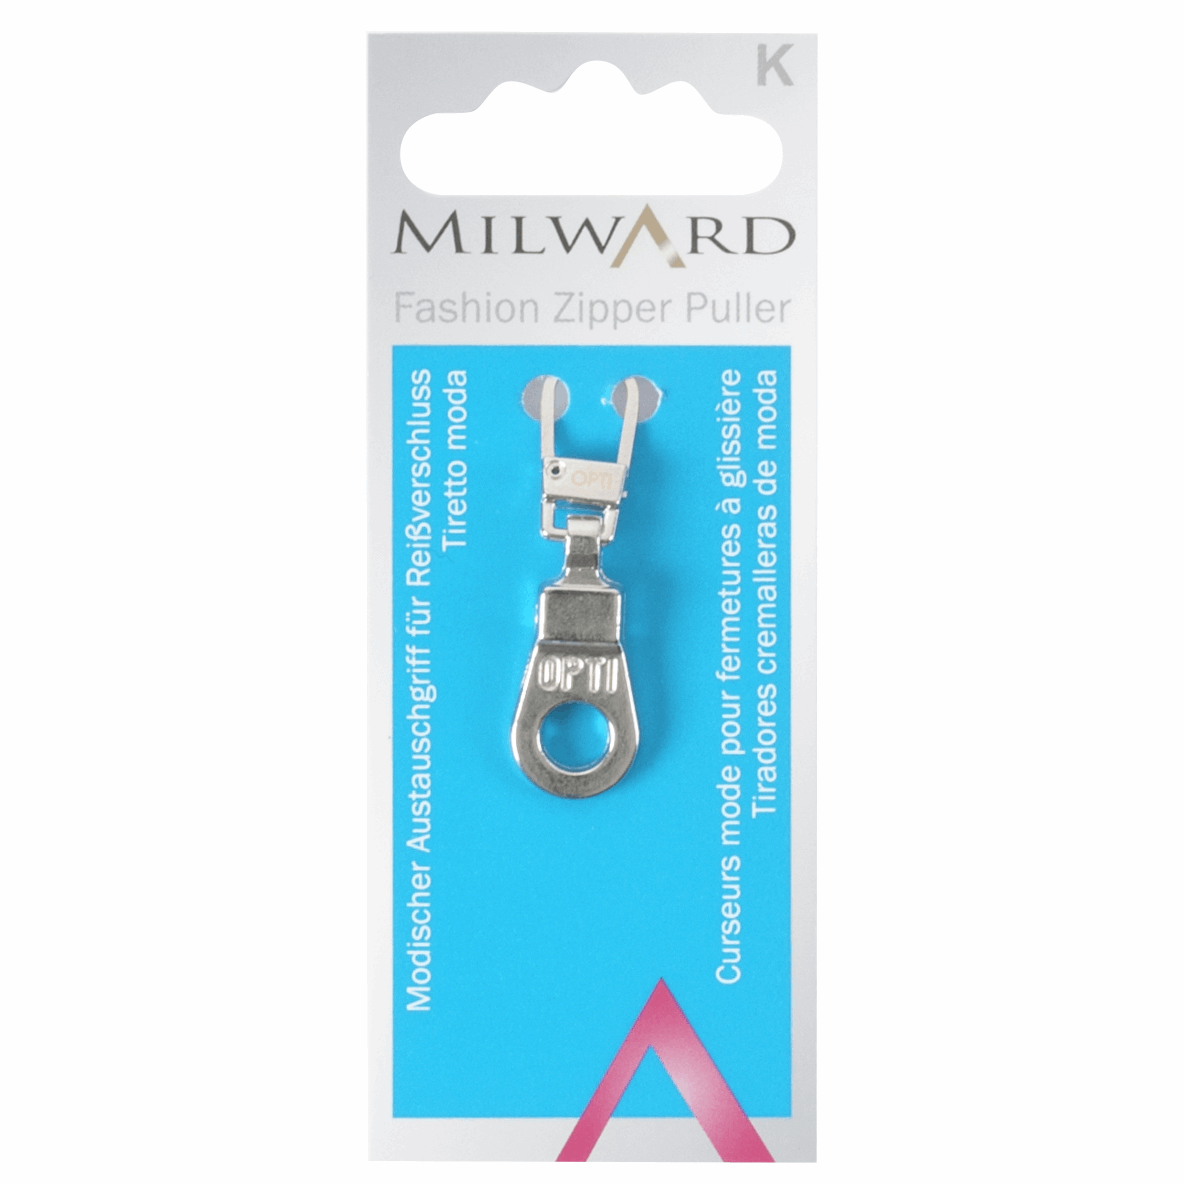 Milward Silver Fashion Zipper Puller